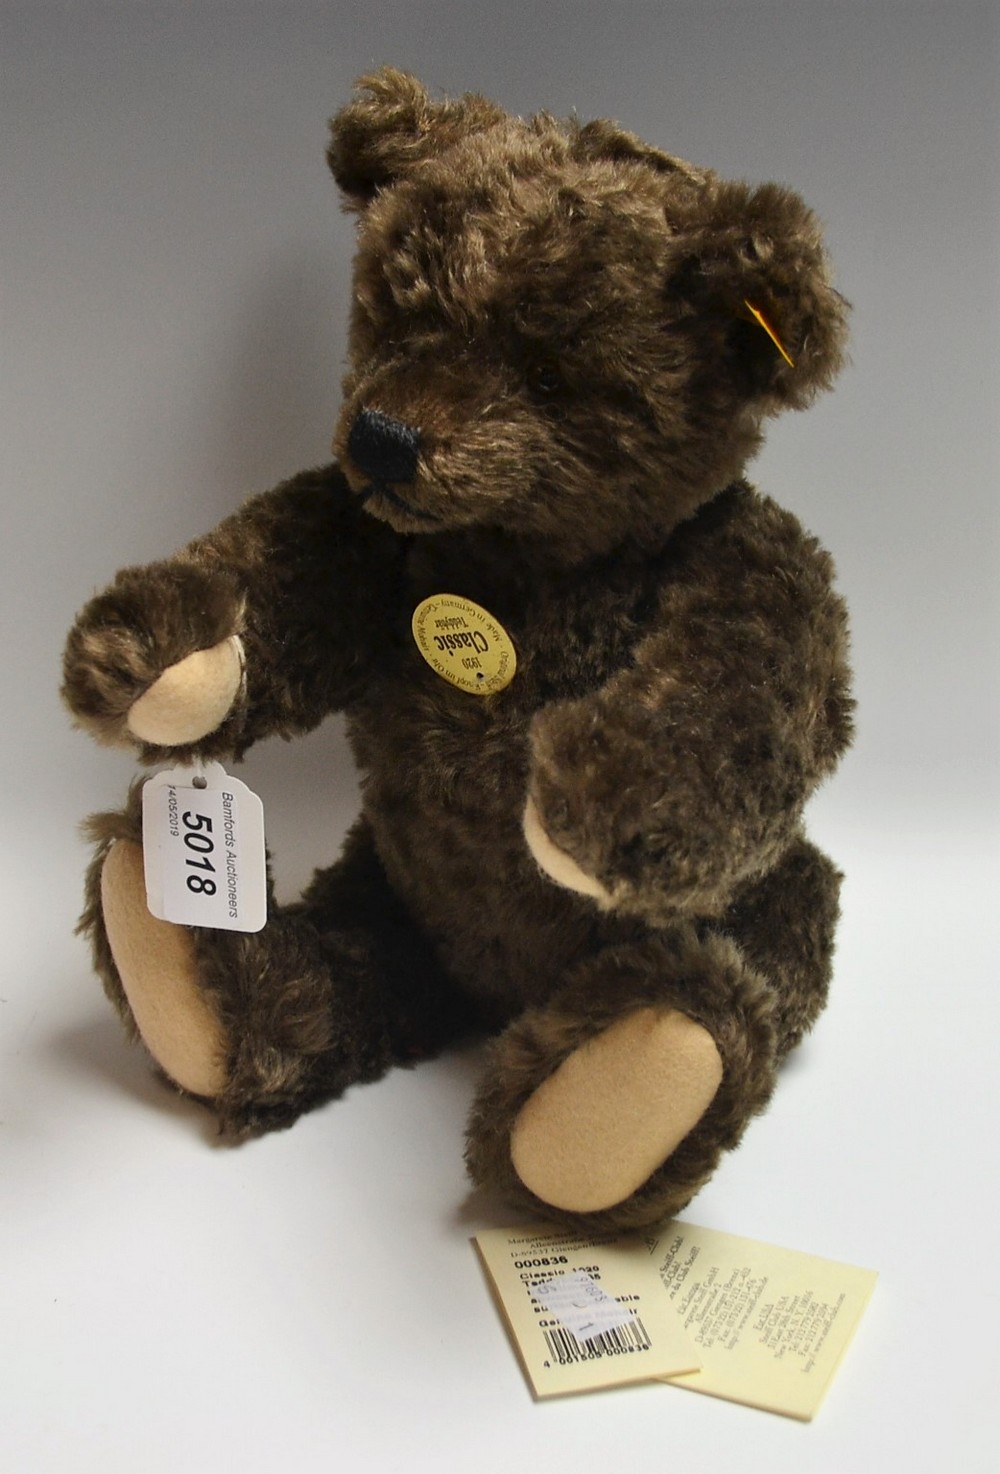 A Steiff teddy bear, classic 1920's style, brown mohair, with growler,